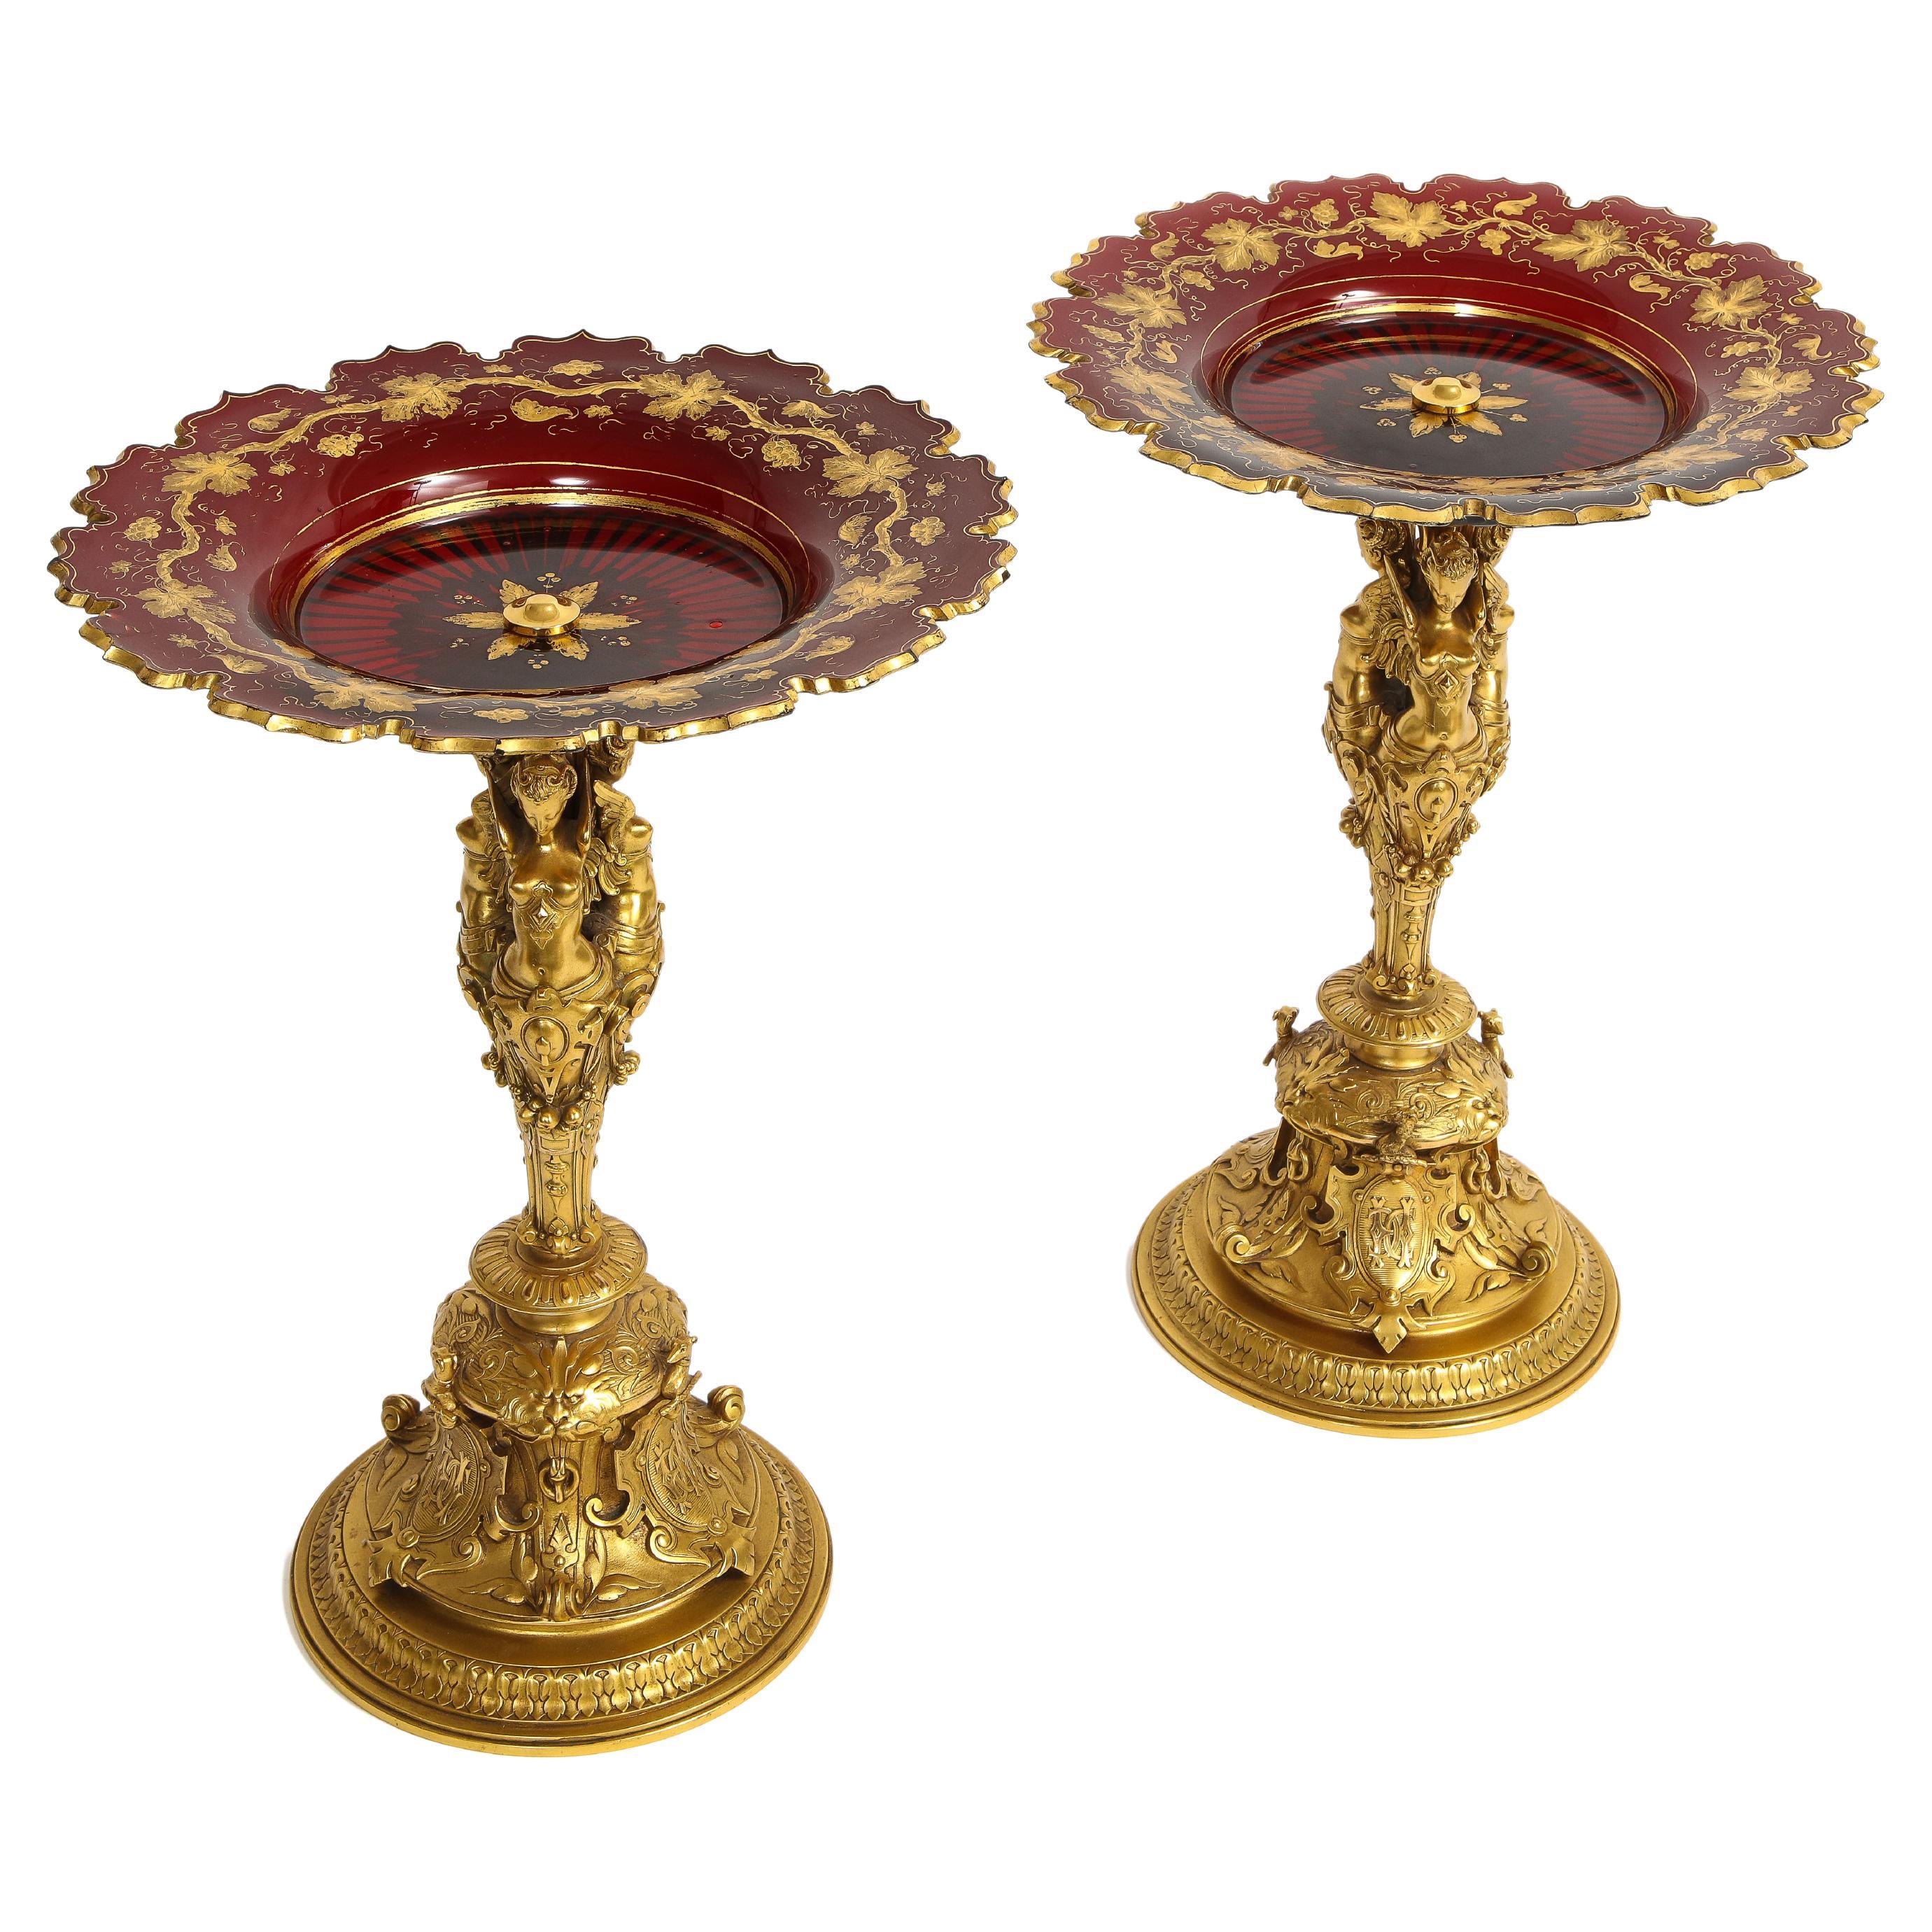 Paire de tazzas françaises de style Louis XVI du 19ème siècle en cristal de Baccarat rouge et bronze doré